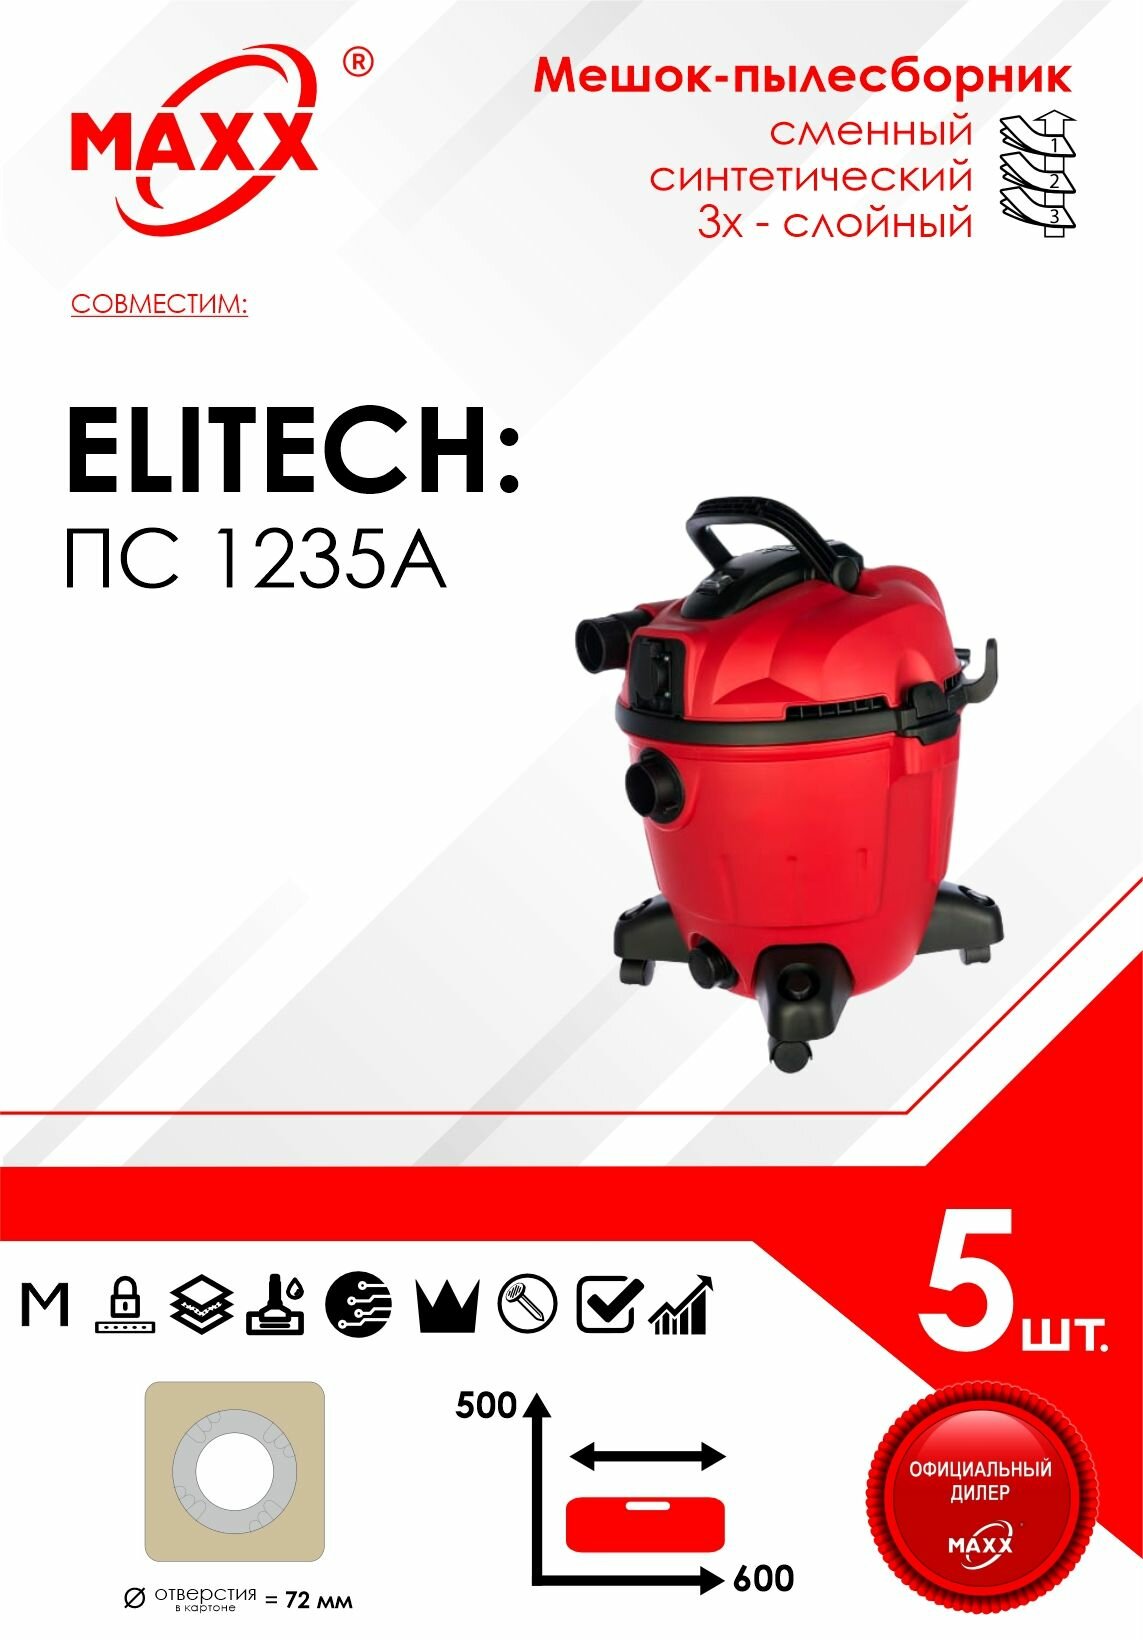 Мешок - пылесборник 5 шт. для пылесоса Elitech ПС 1235А